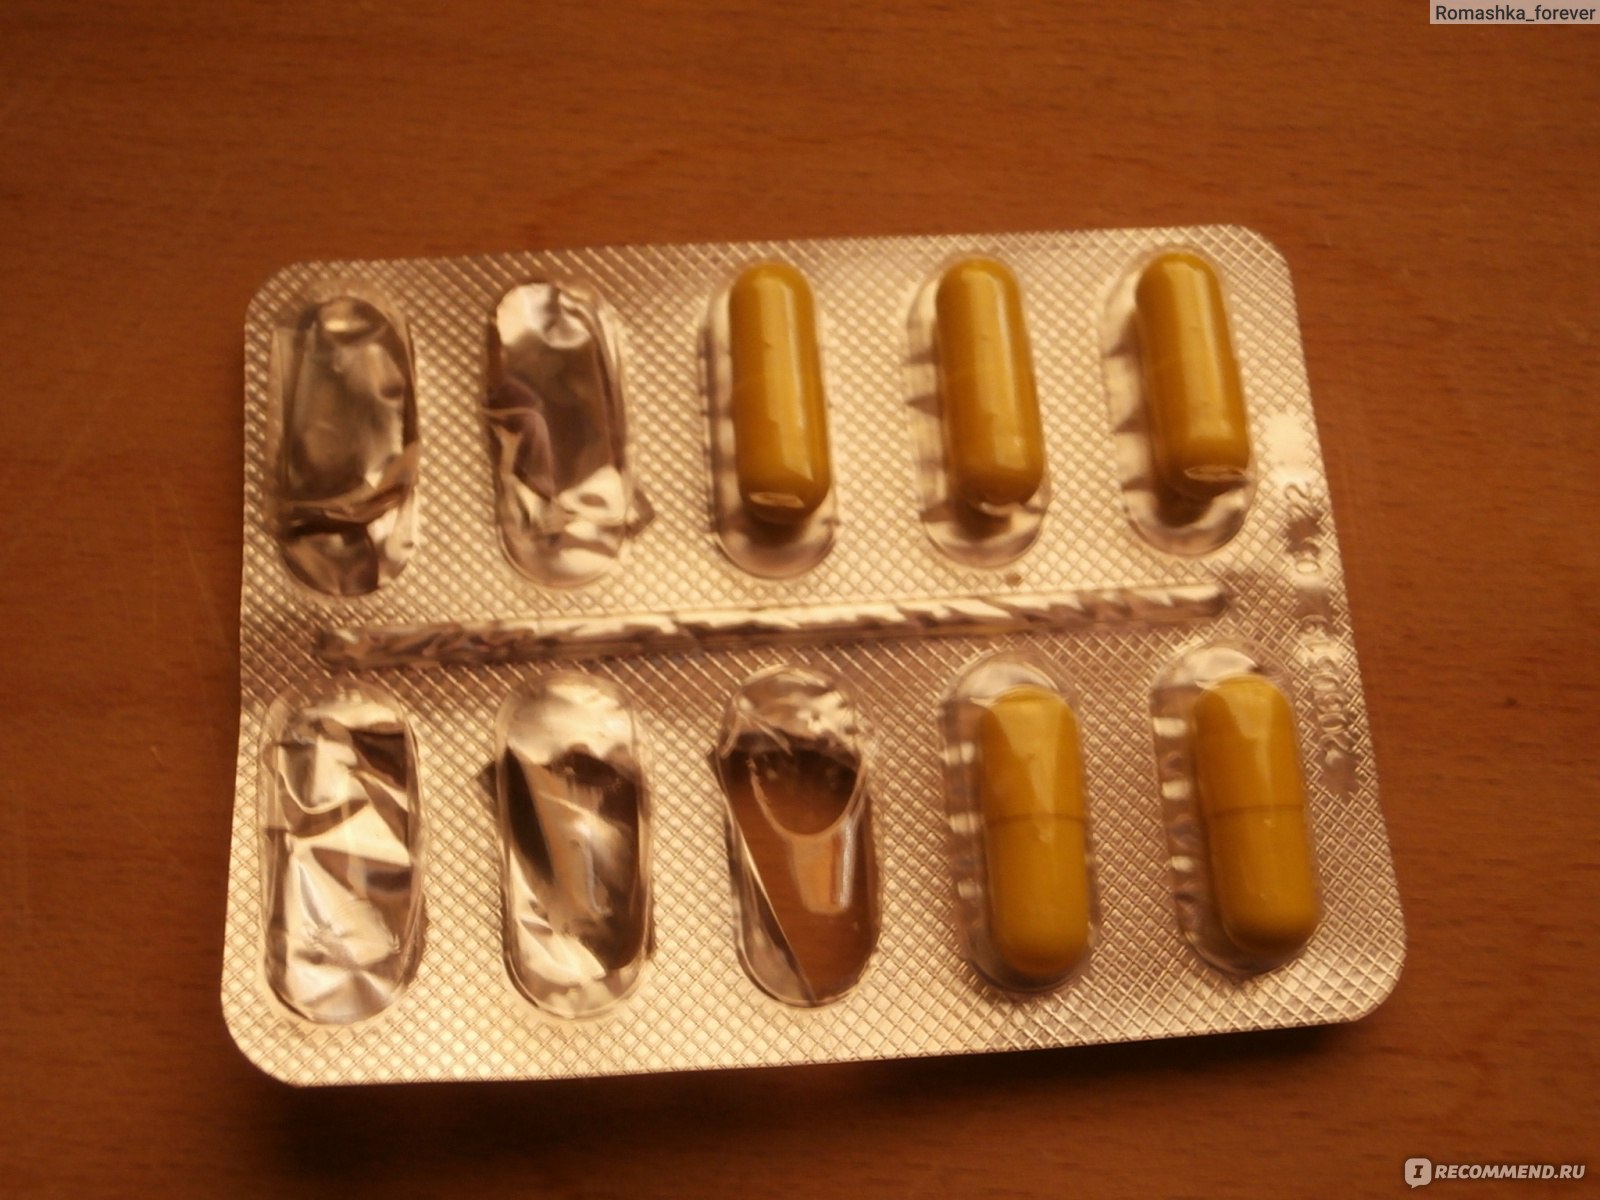 Антибиотики как триггеры атопического дерматита у детей